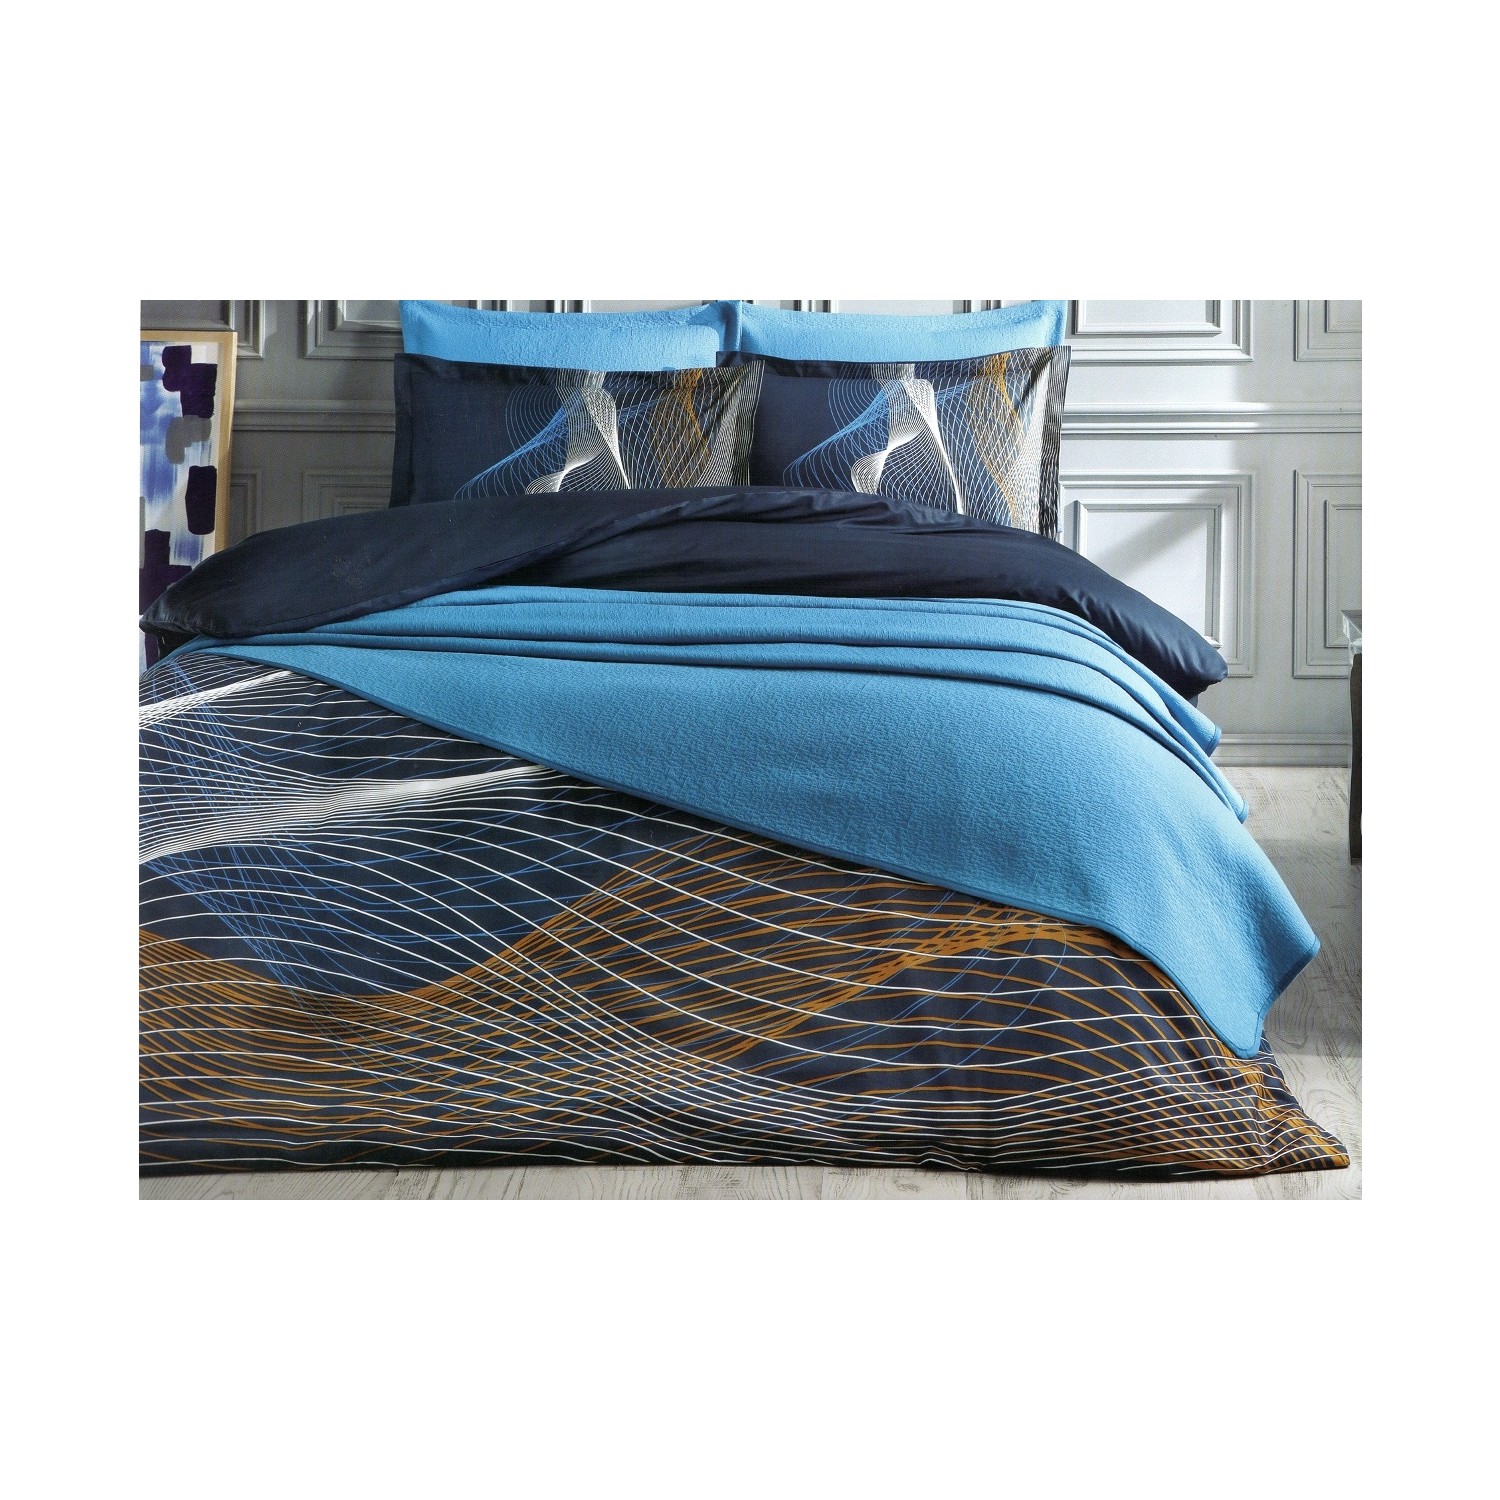 Комплект постельного белья Комплект покрывала и пододеяльника для двуспальной кровати Ozdilek Resumo темно-синего цвета